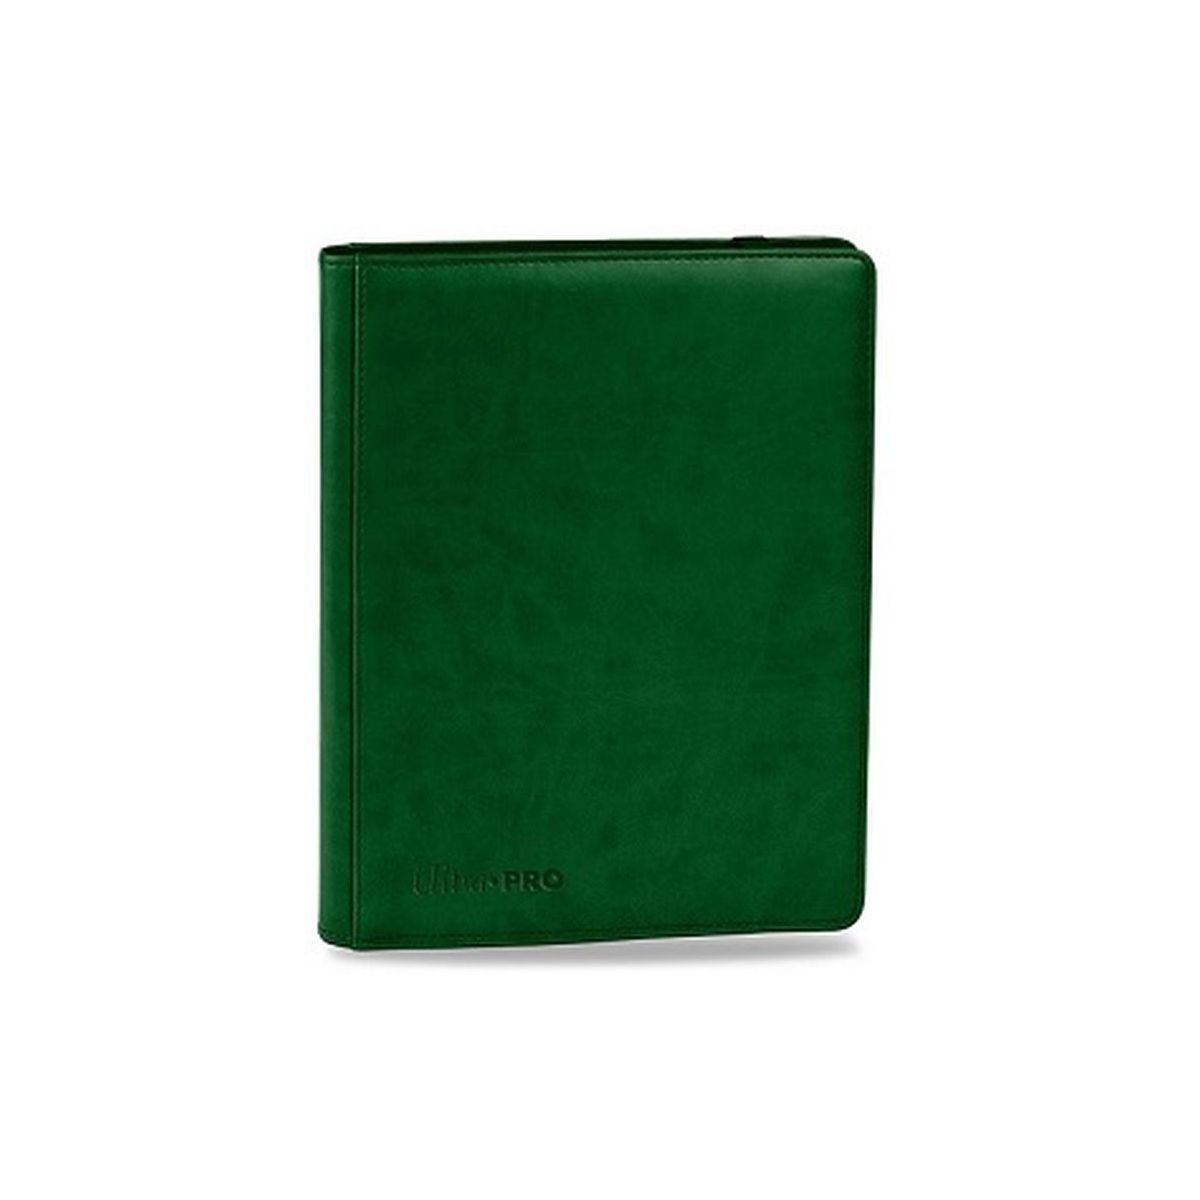 Pro Binder Premium 9 Boxes - Green